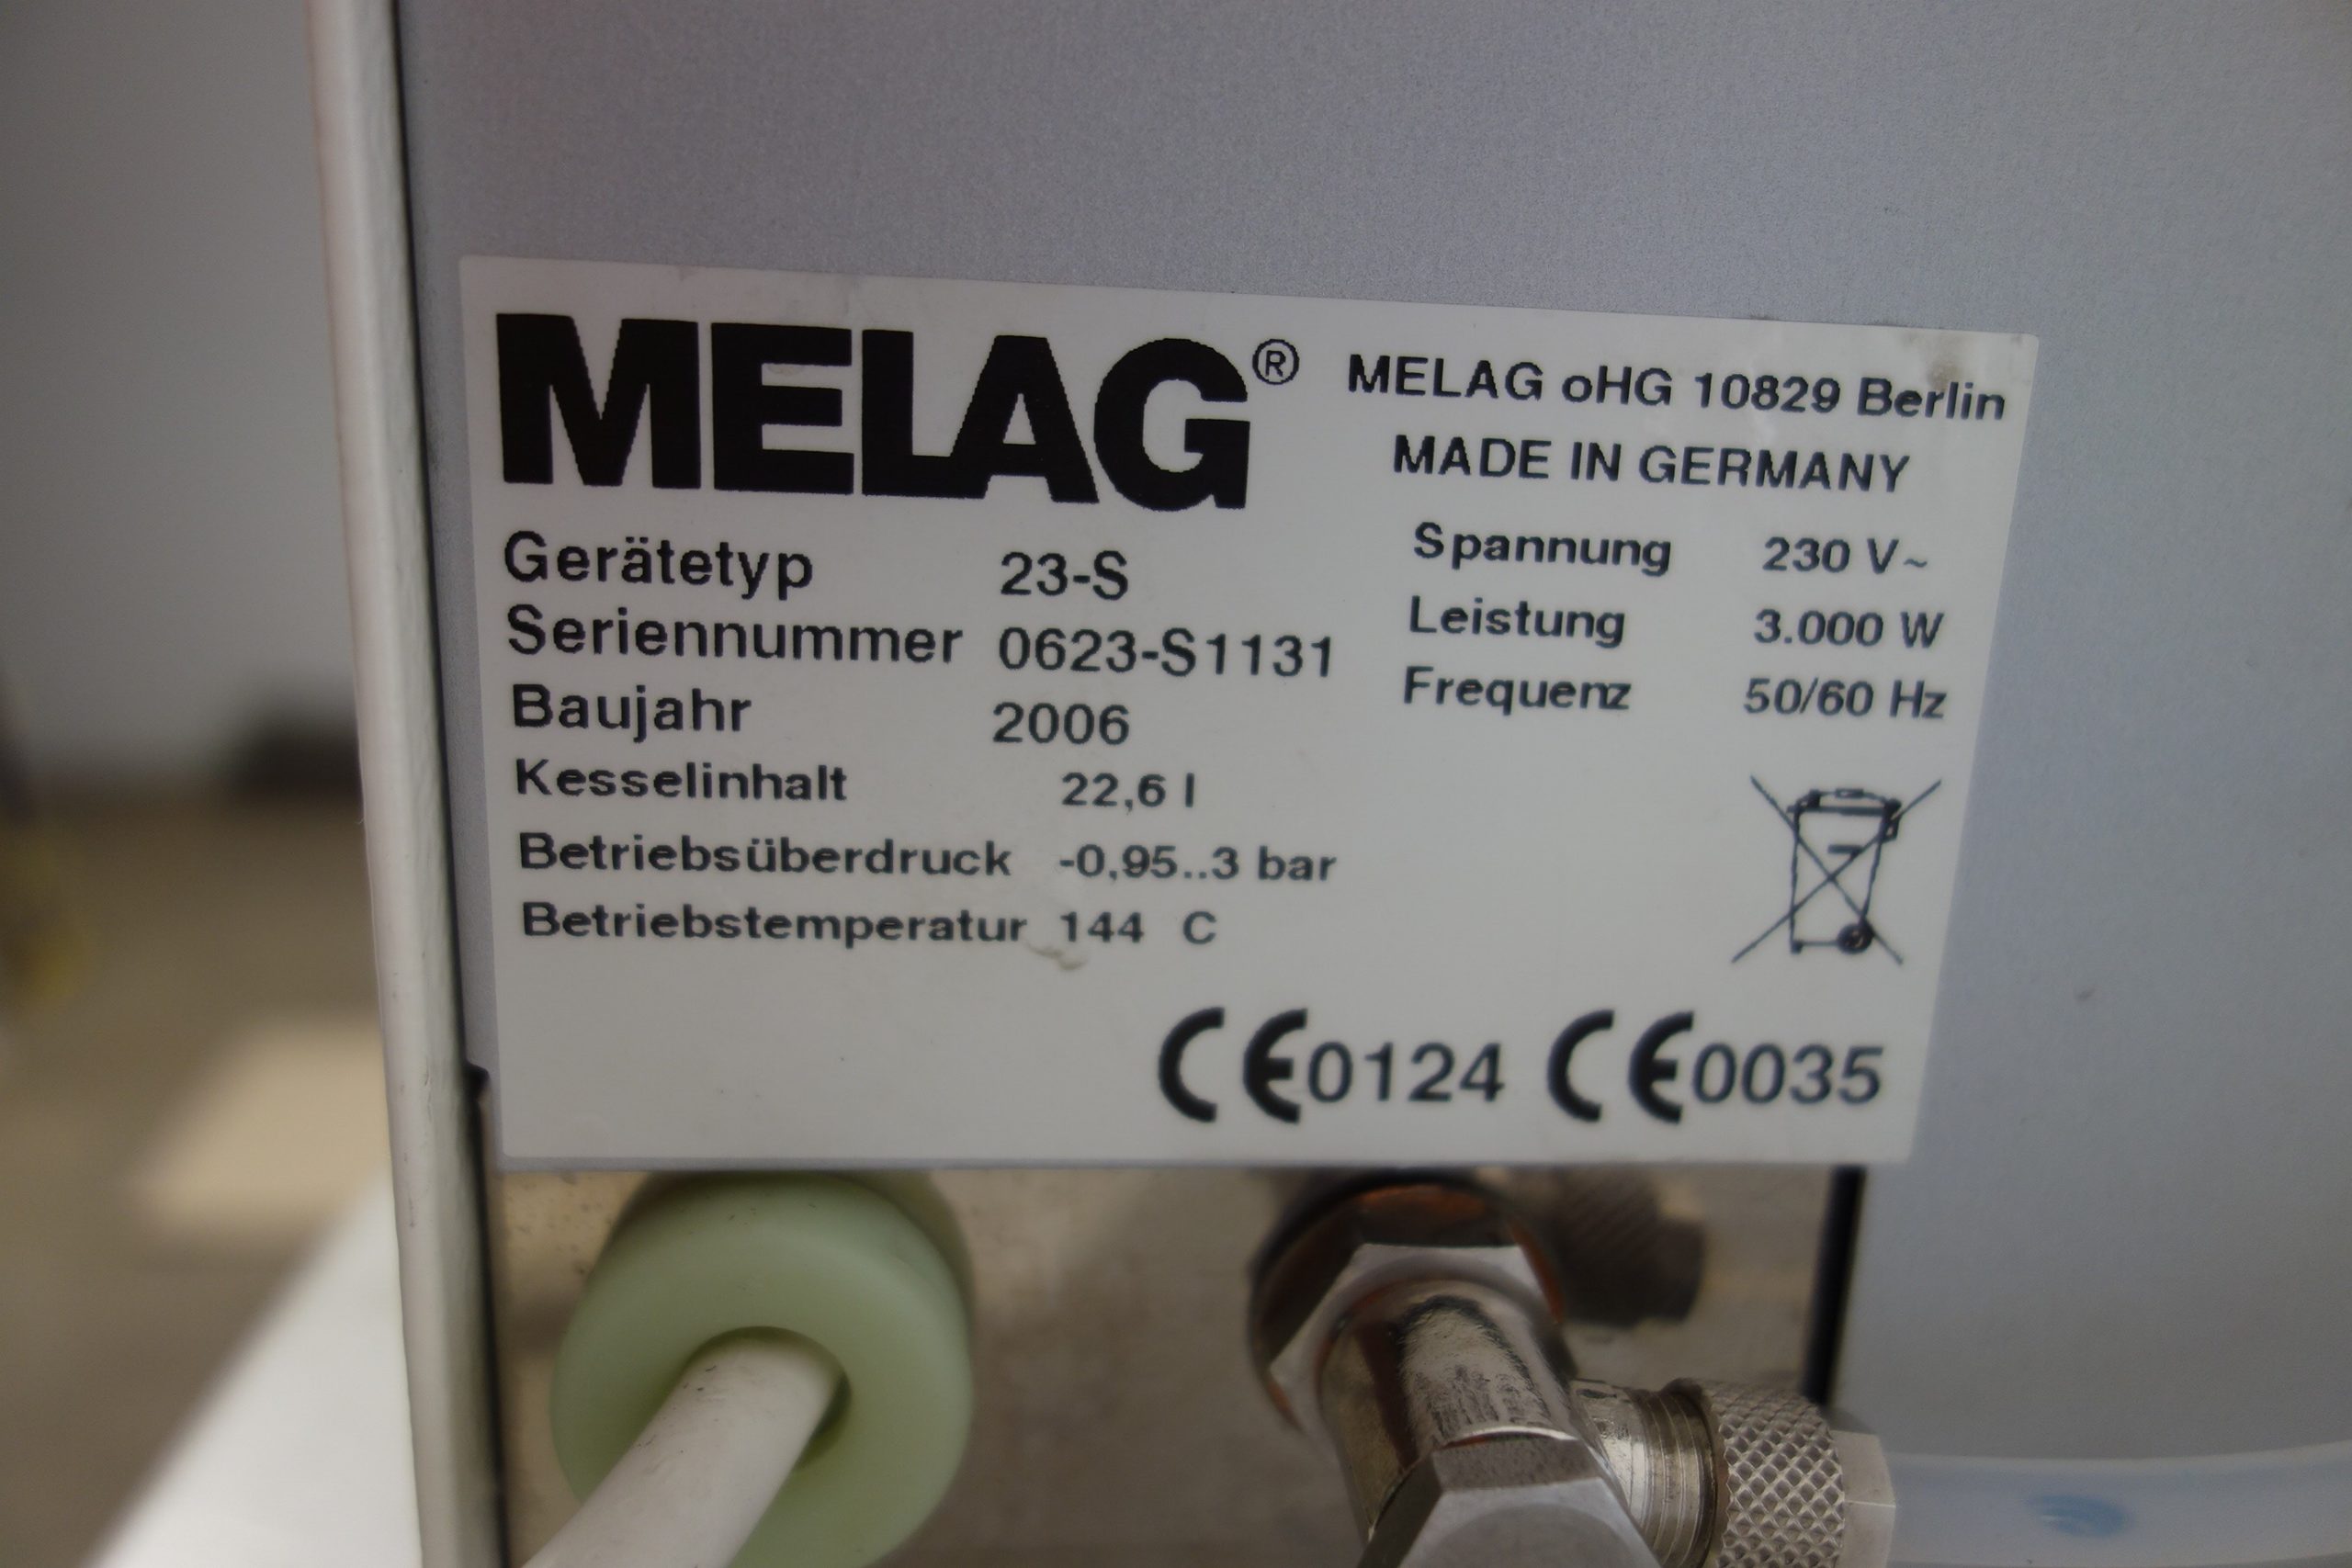 melag-euroklav-23-s-baujahr-2006-mit-751-chargen-4541